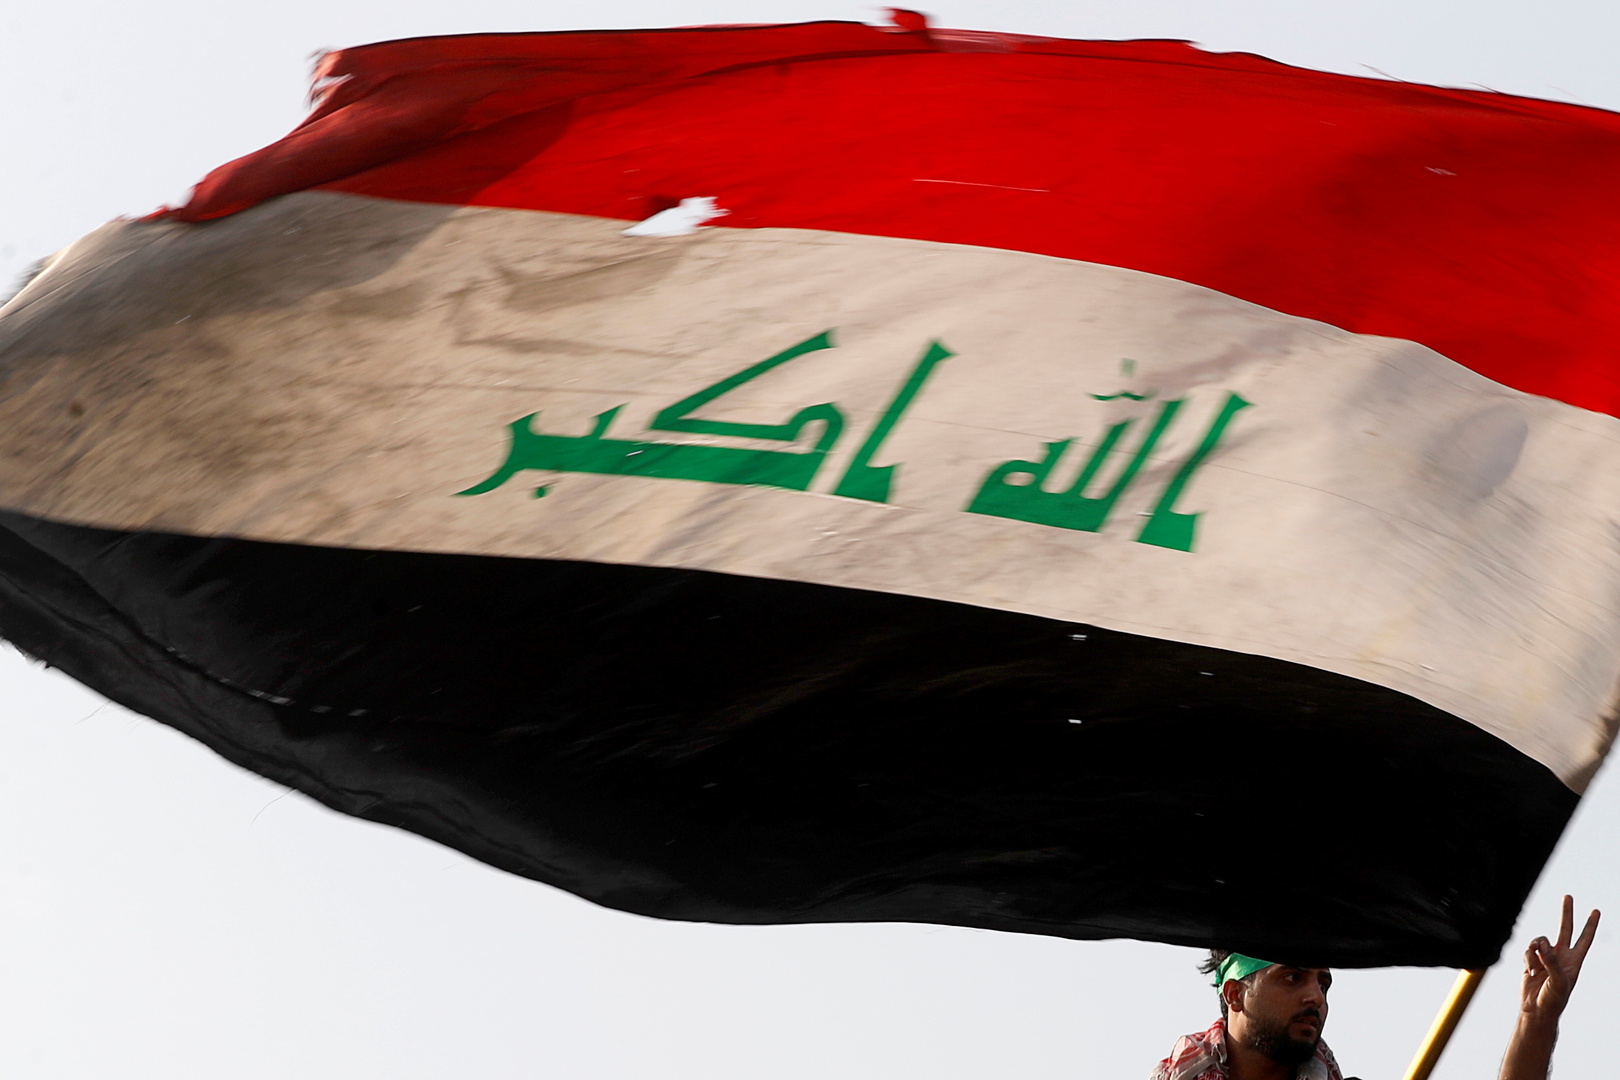 اشتباك بين أمن الحشد الشعبي وفصيل مسلح في دائرة حكومية بشمال العراق (فيديو)